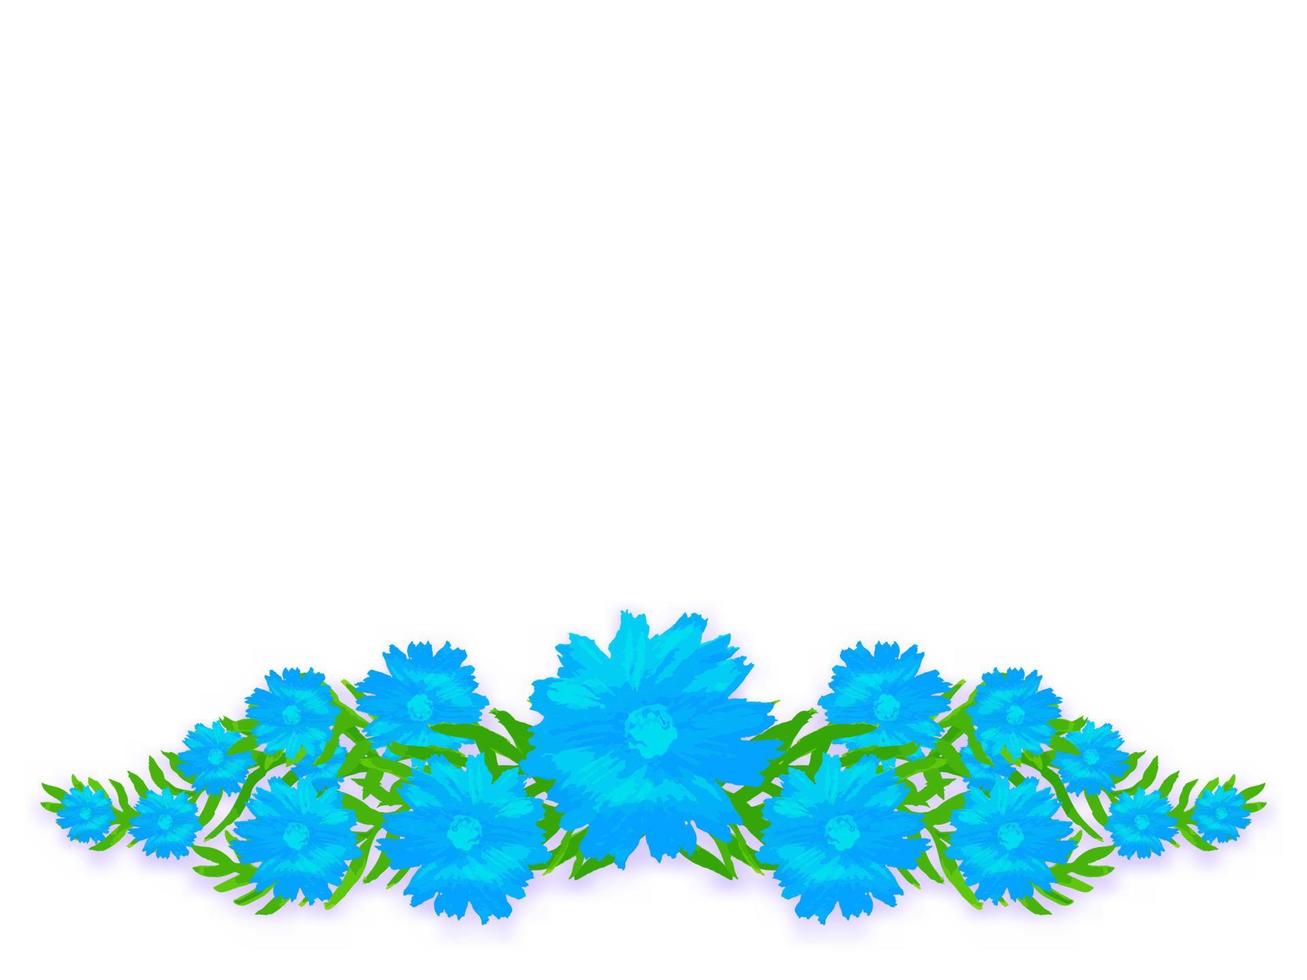 Blumen üppige Rebe handgezeichnete Banner. Kornblumen des blauen Feldes mit webt grüne Blätter Frühlingsbündelschablone mit hellen Farben Vektorimpressionismus vektor